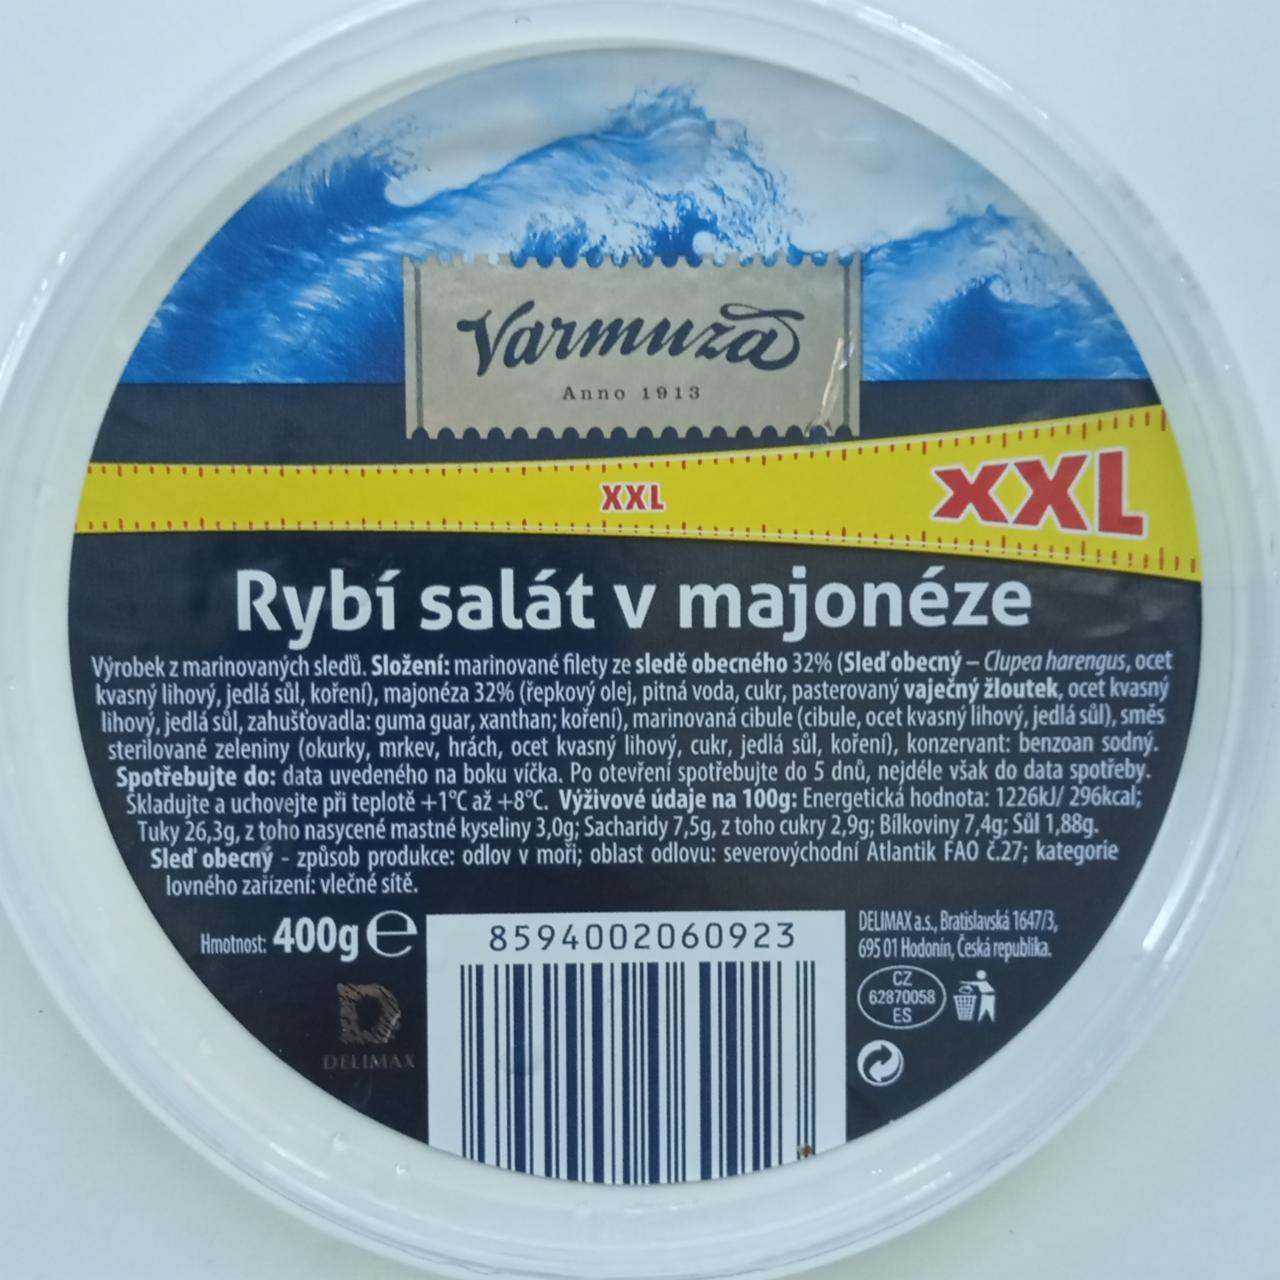 Fotografie - Rybí salát v majonéze XXL Varmuža